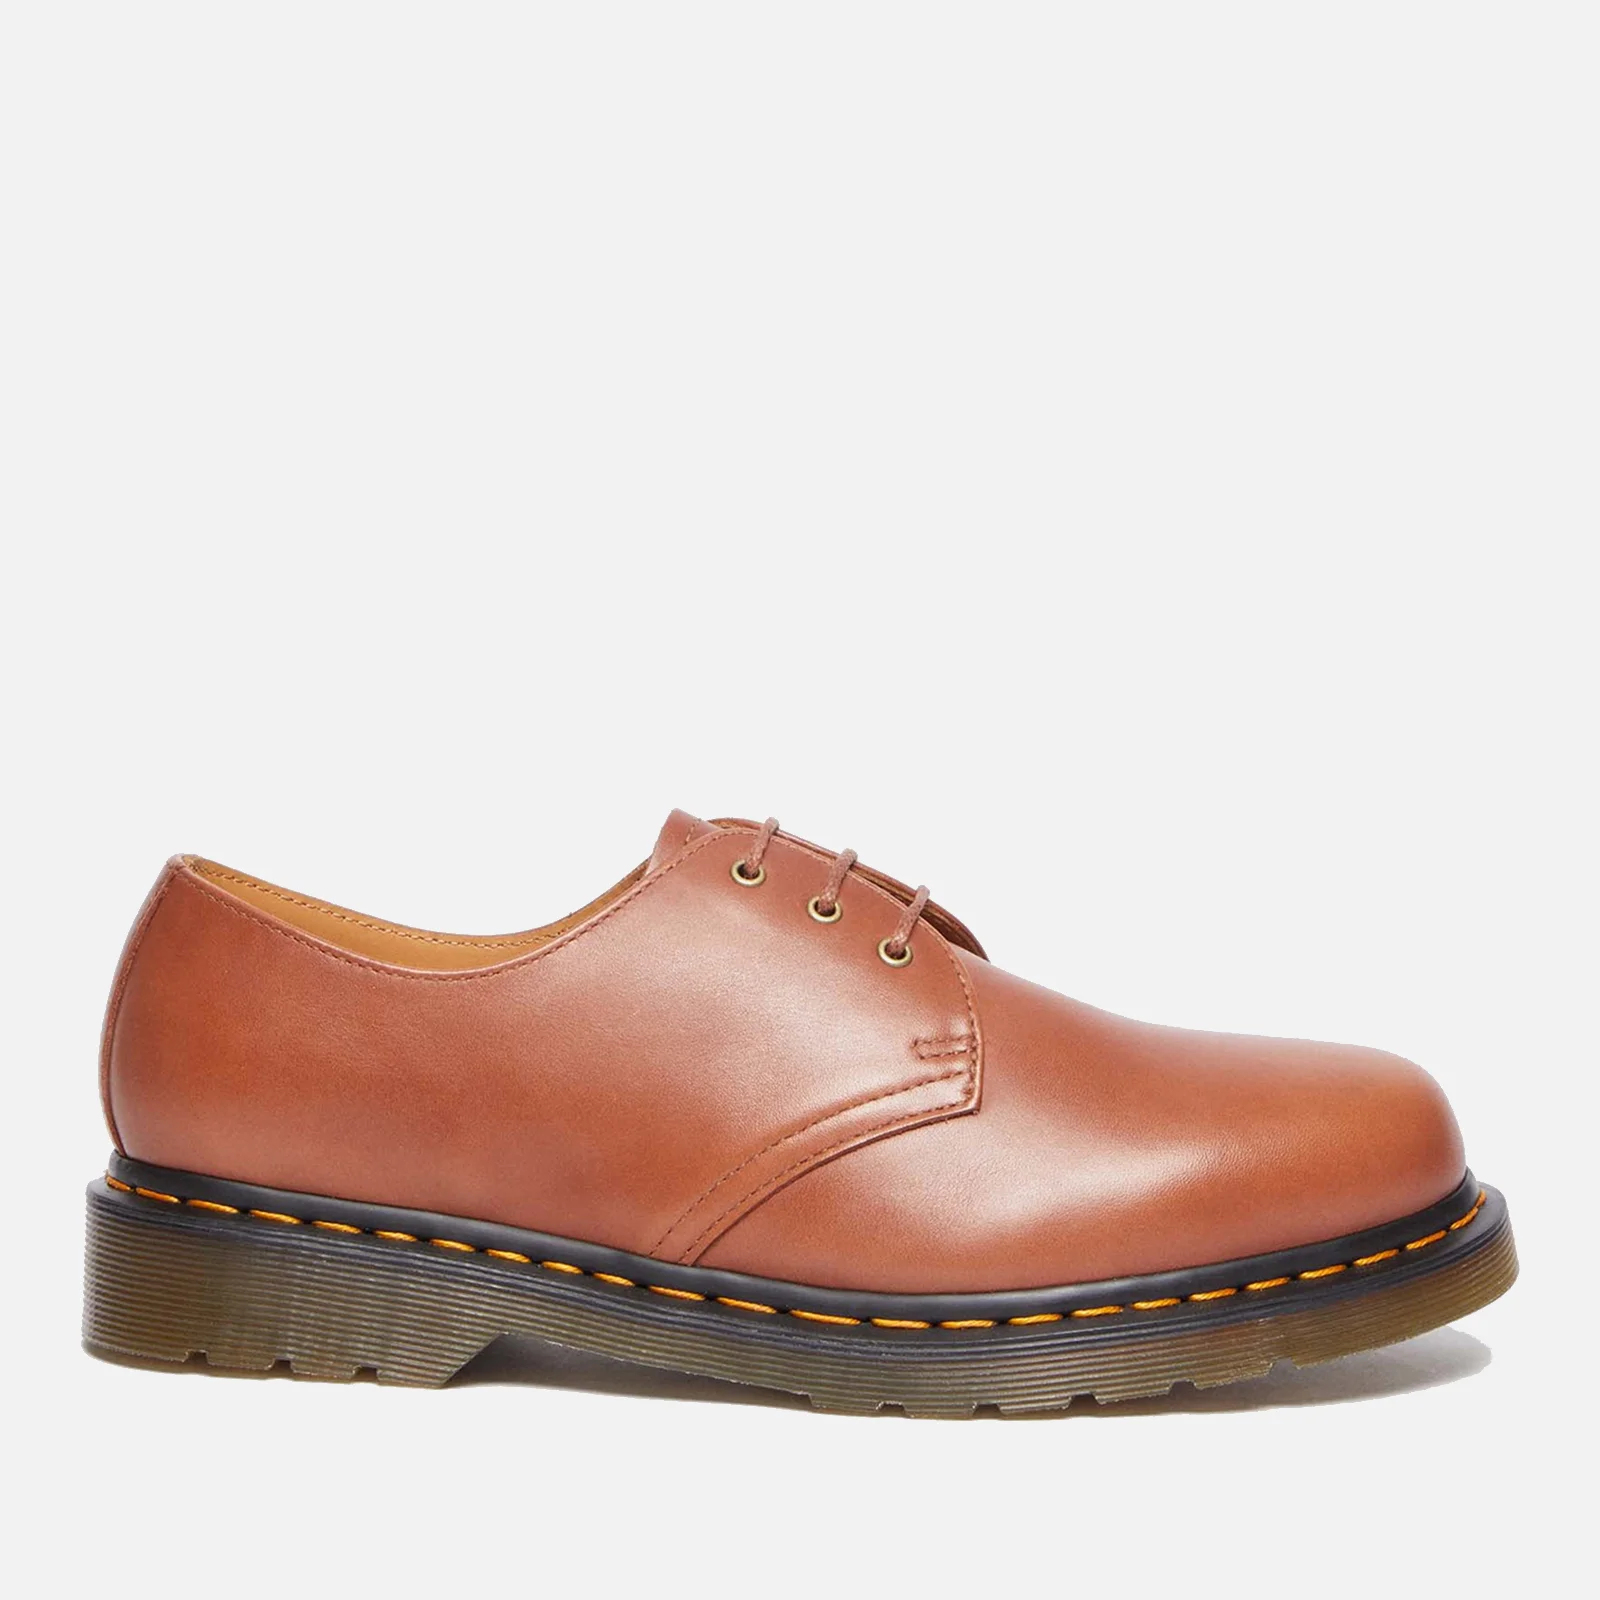 Dr. Martens Men's 1461 Leather Shoes Image 1